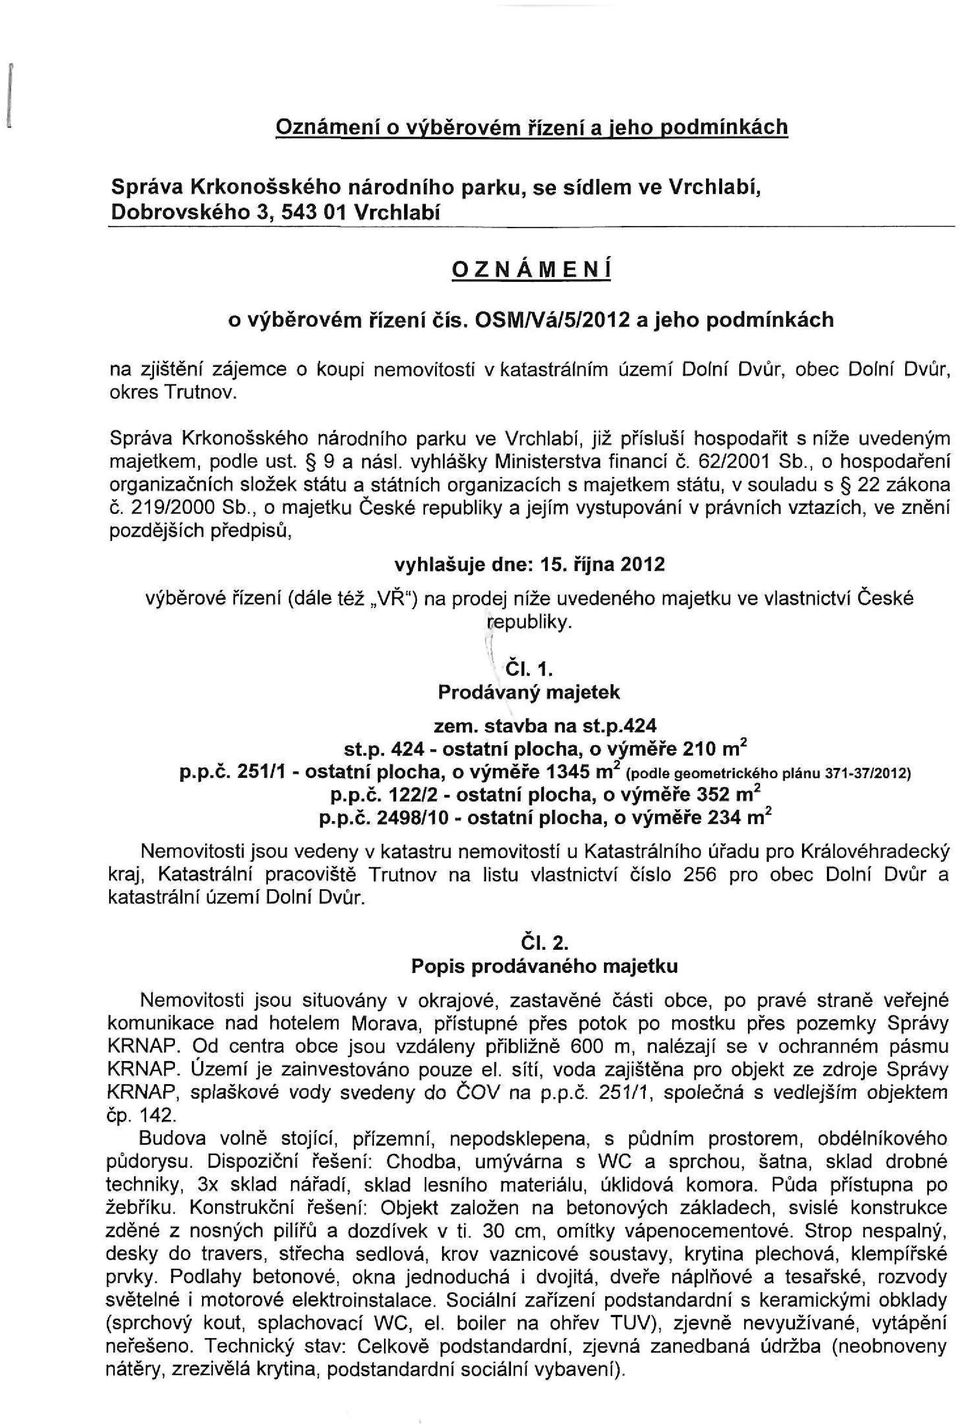 Správa Krkonošského národního parku ve Vrchlabí, již přísluší hospodařit s níže uvedeným majetkem, podle ust. 9 a násl. vyhlášky Ministerstva financí č. 62/2001 Sb.